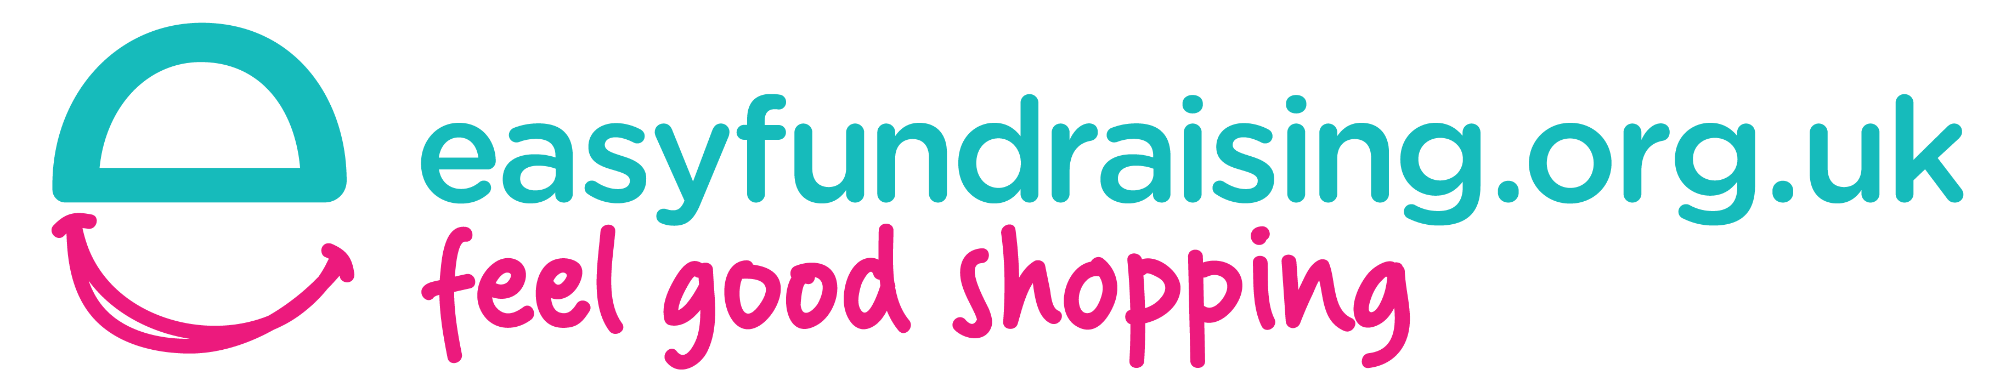 easyfundraising.org.uk logo